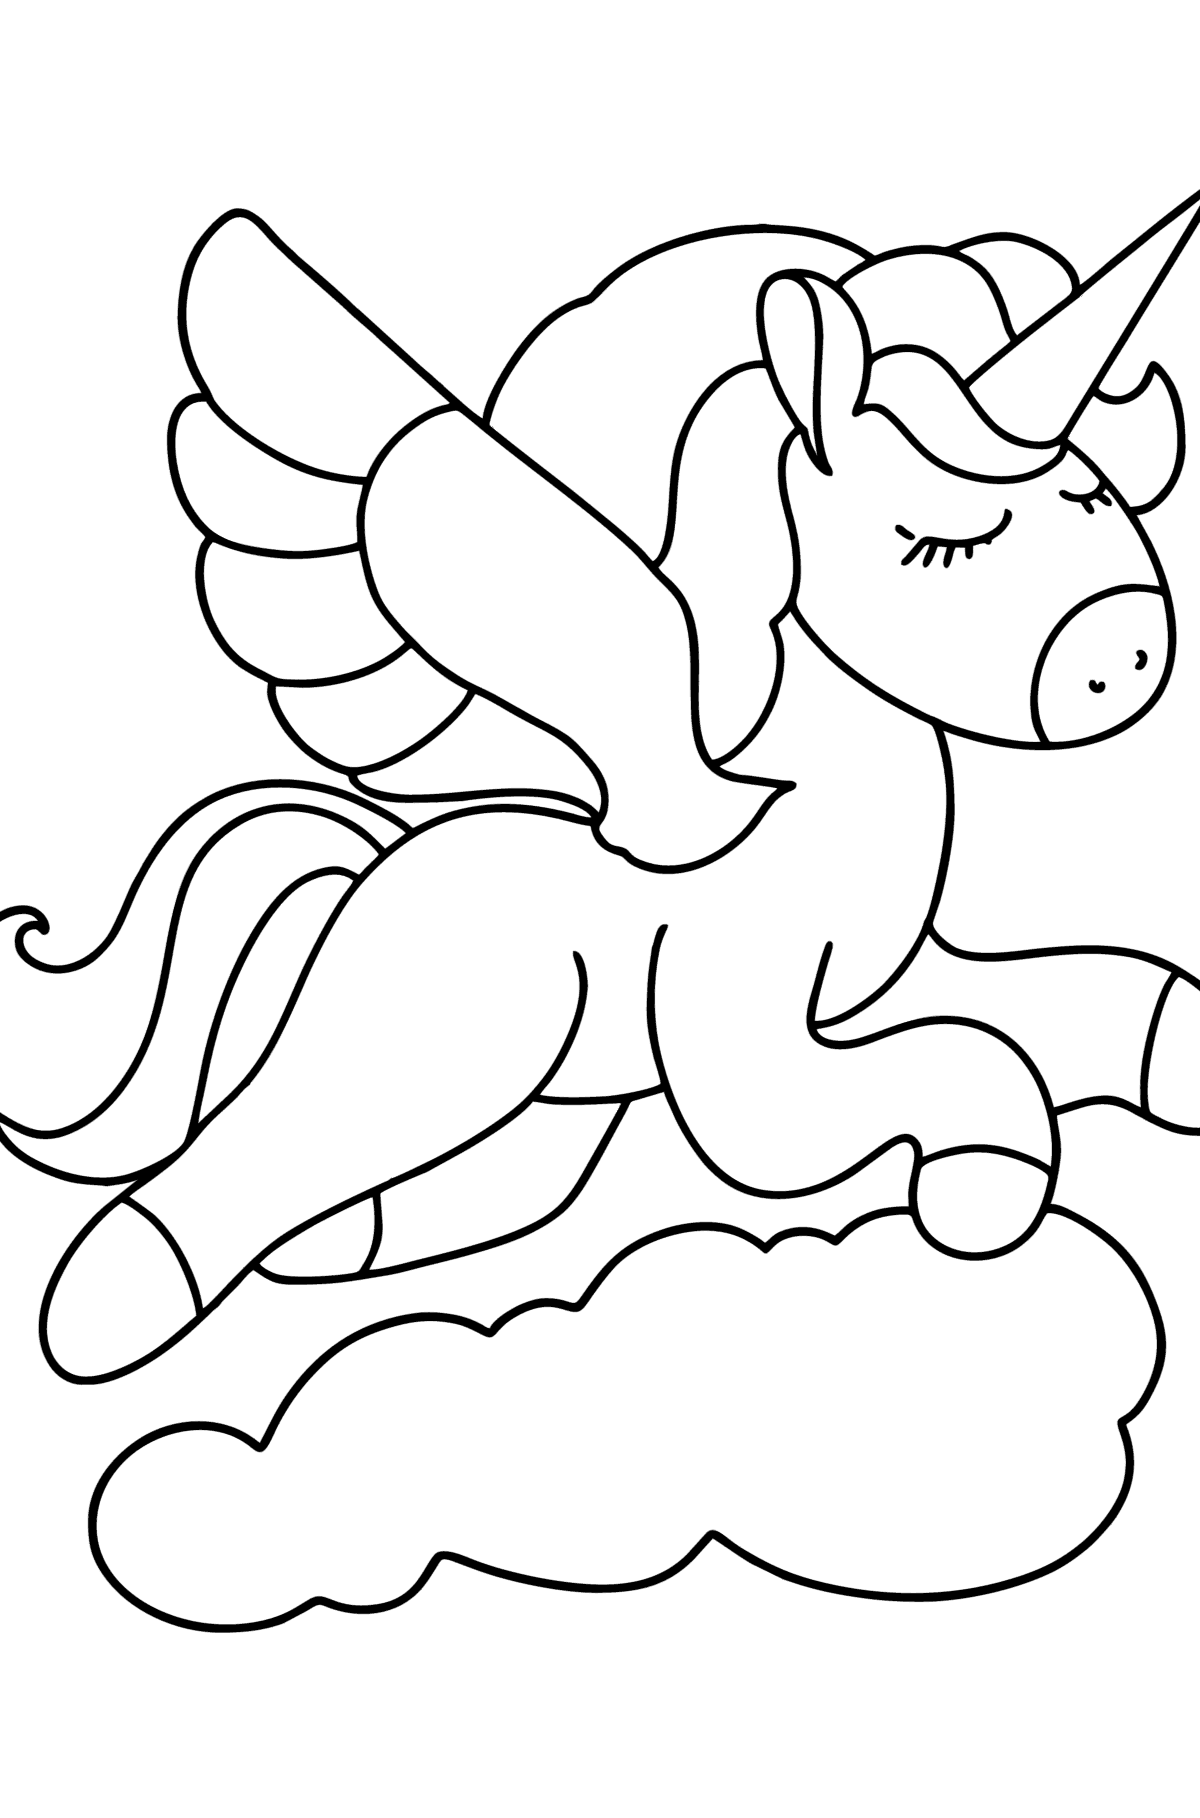 Dibujo para colorear de unicornio con alas - Dibujos para Colorear para Niños